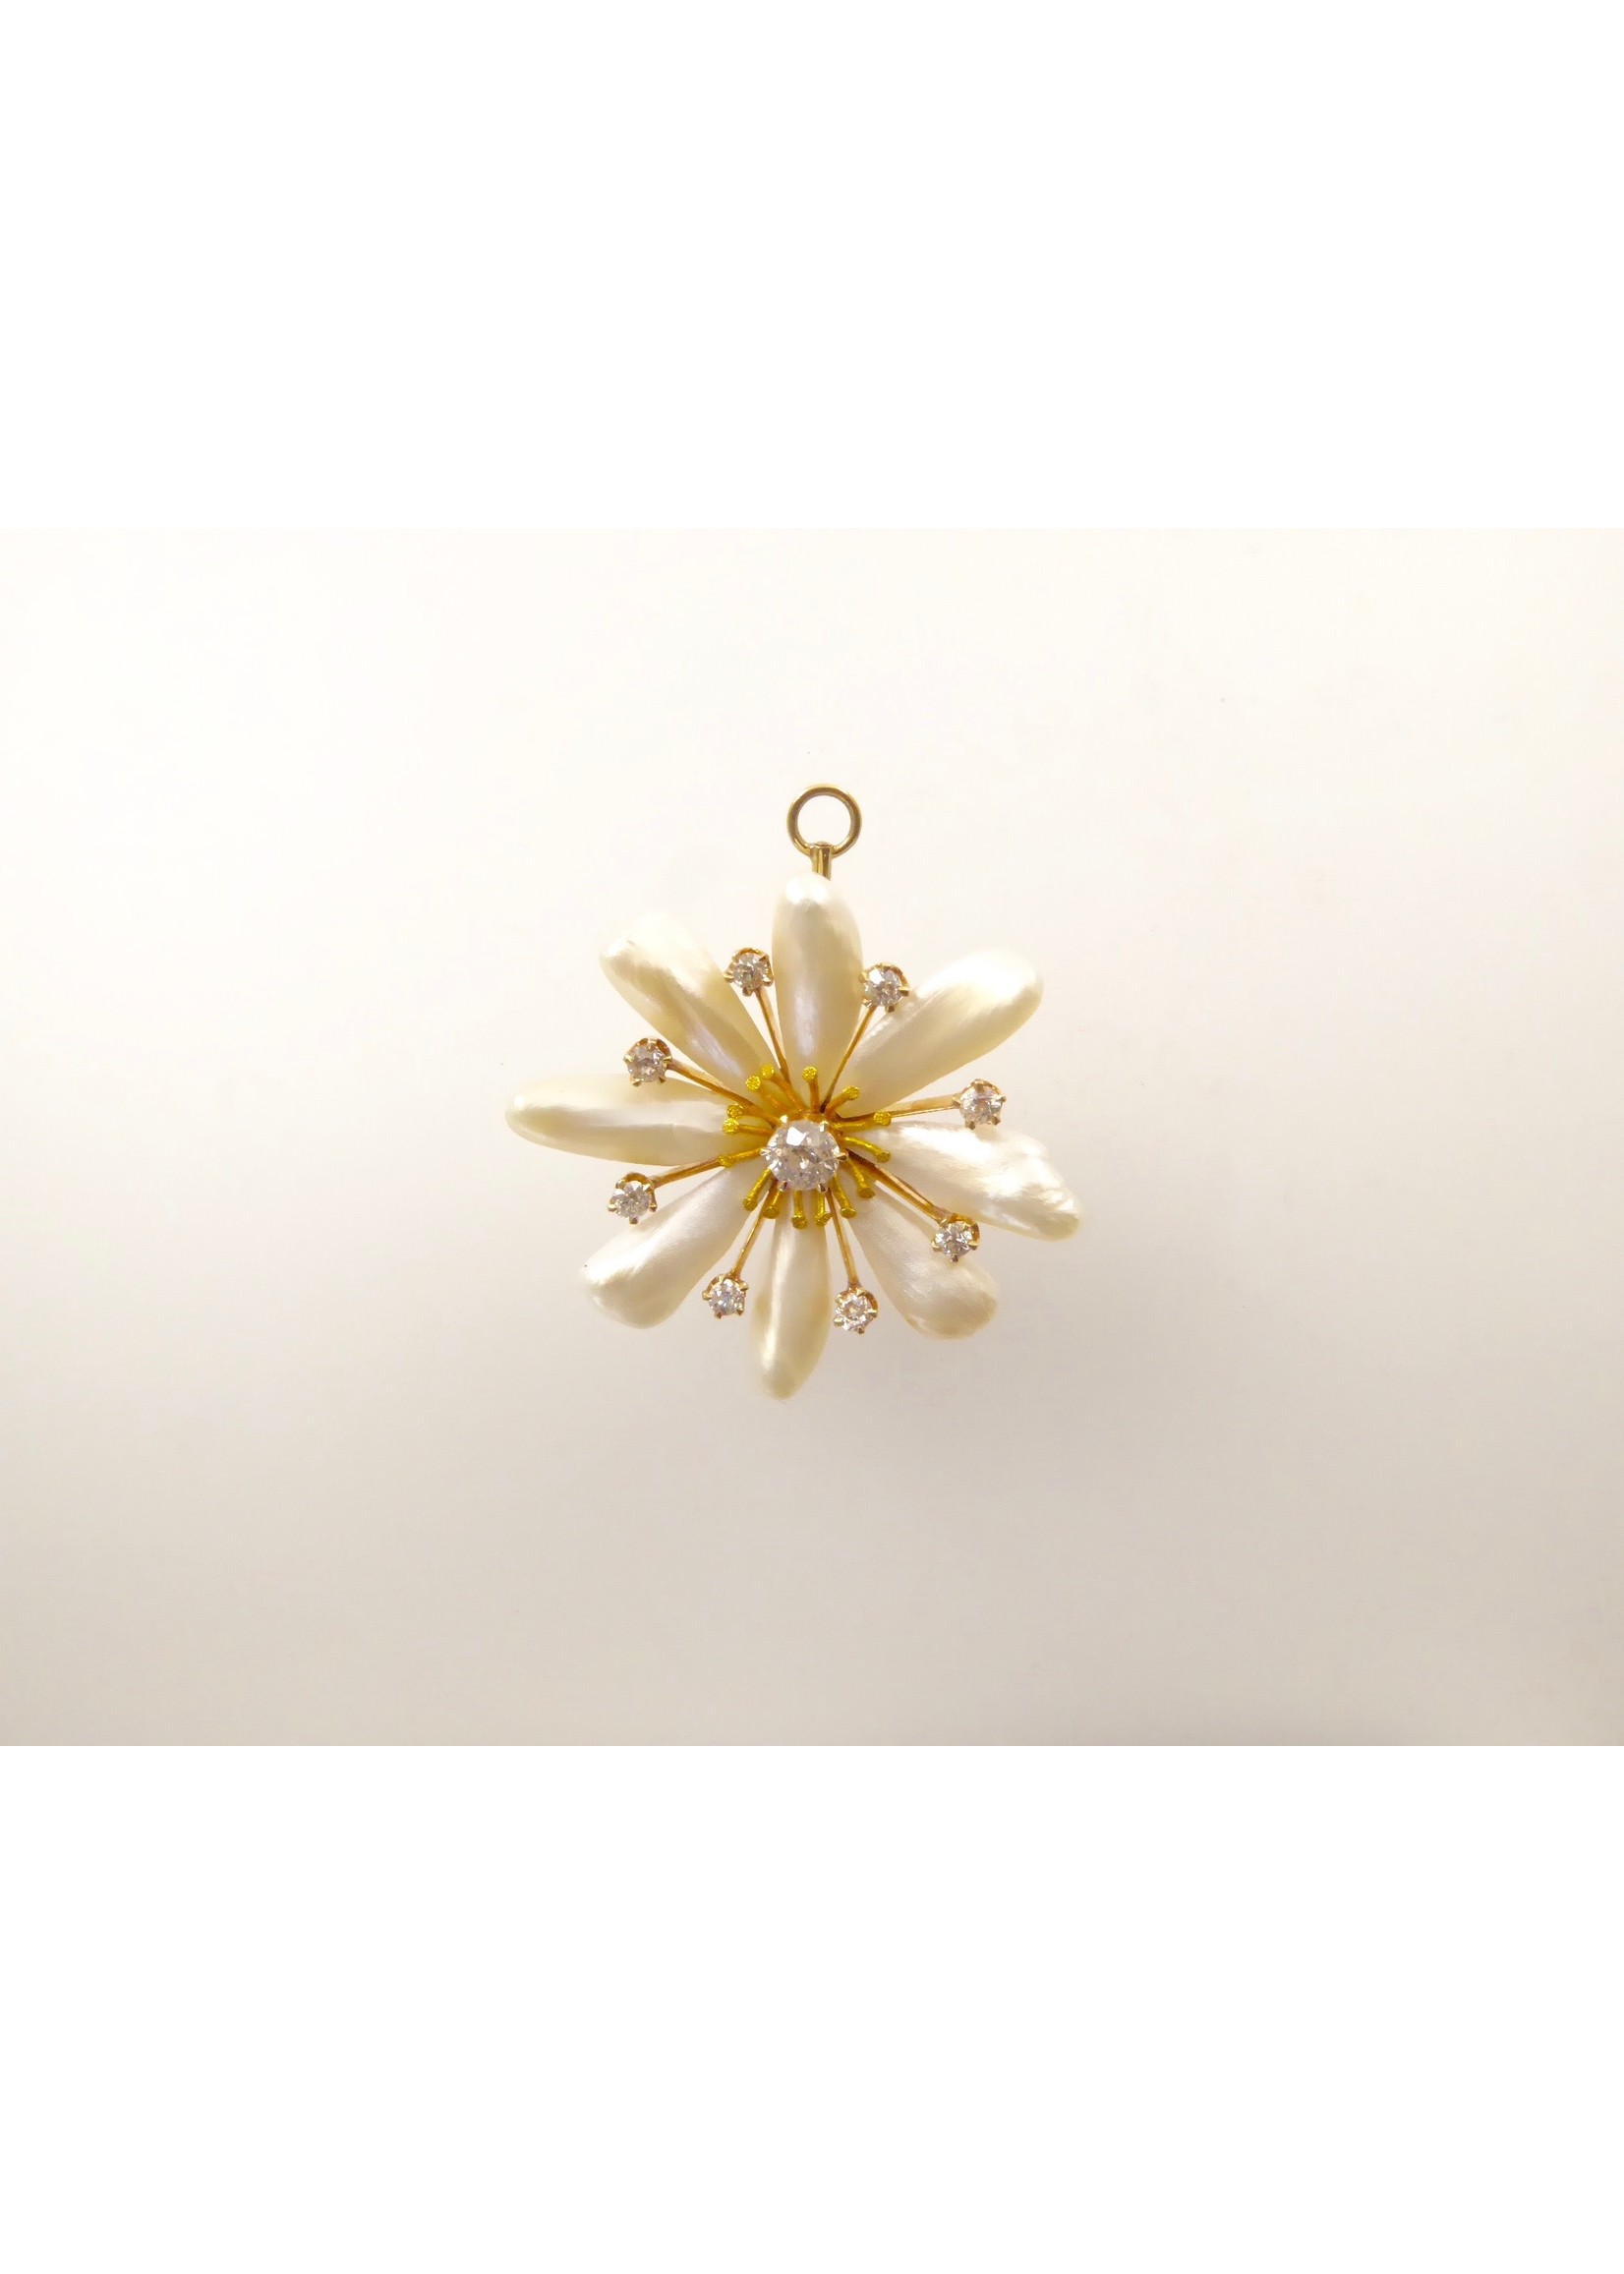 Lisa Kramer Vintage Jewelry Edwardian Diamond and Mississippi Pearl brooch/pendant